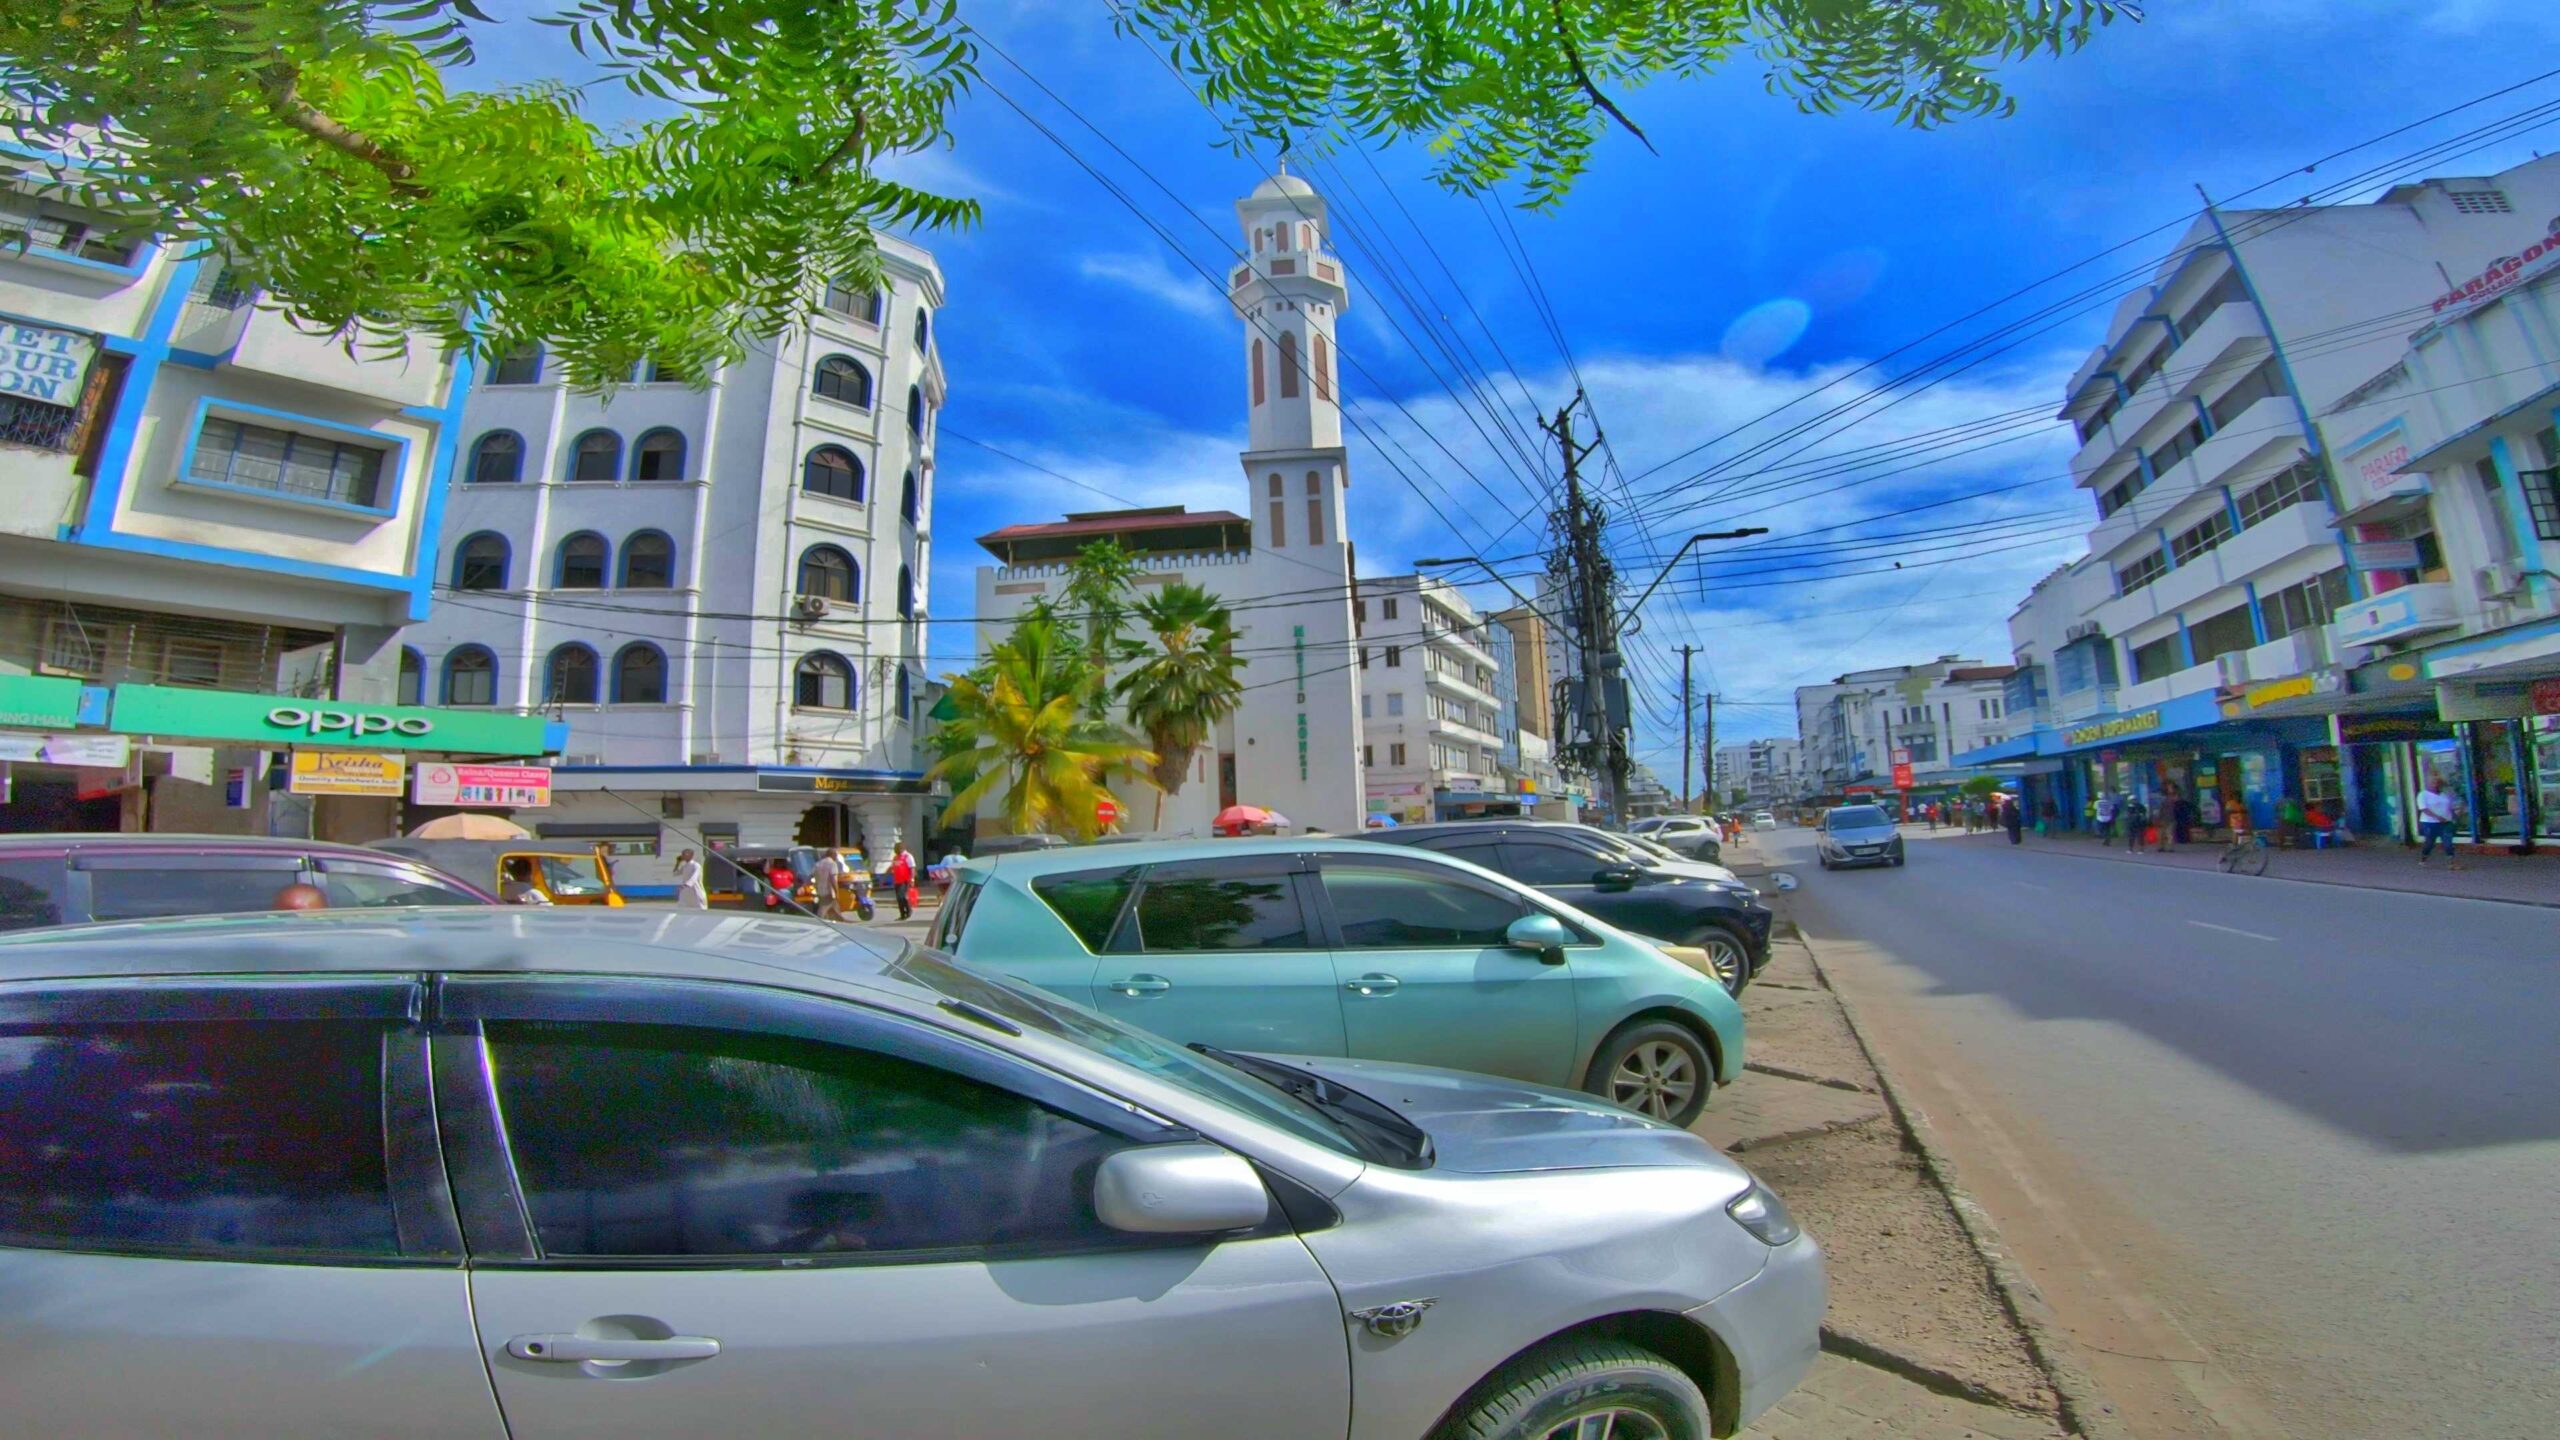 Exploring Mombasa the safe way